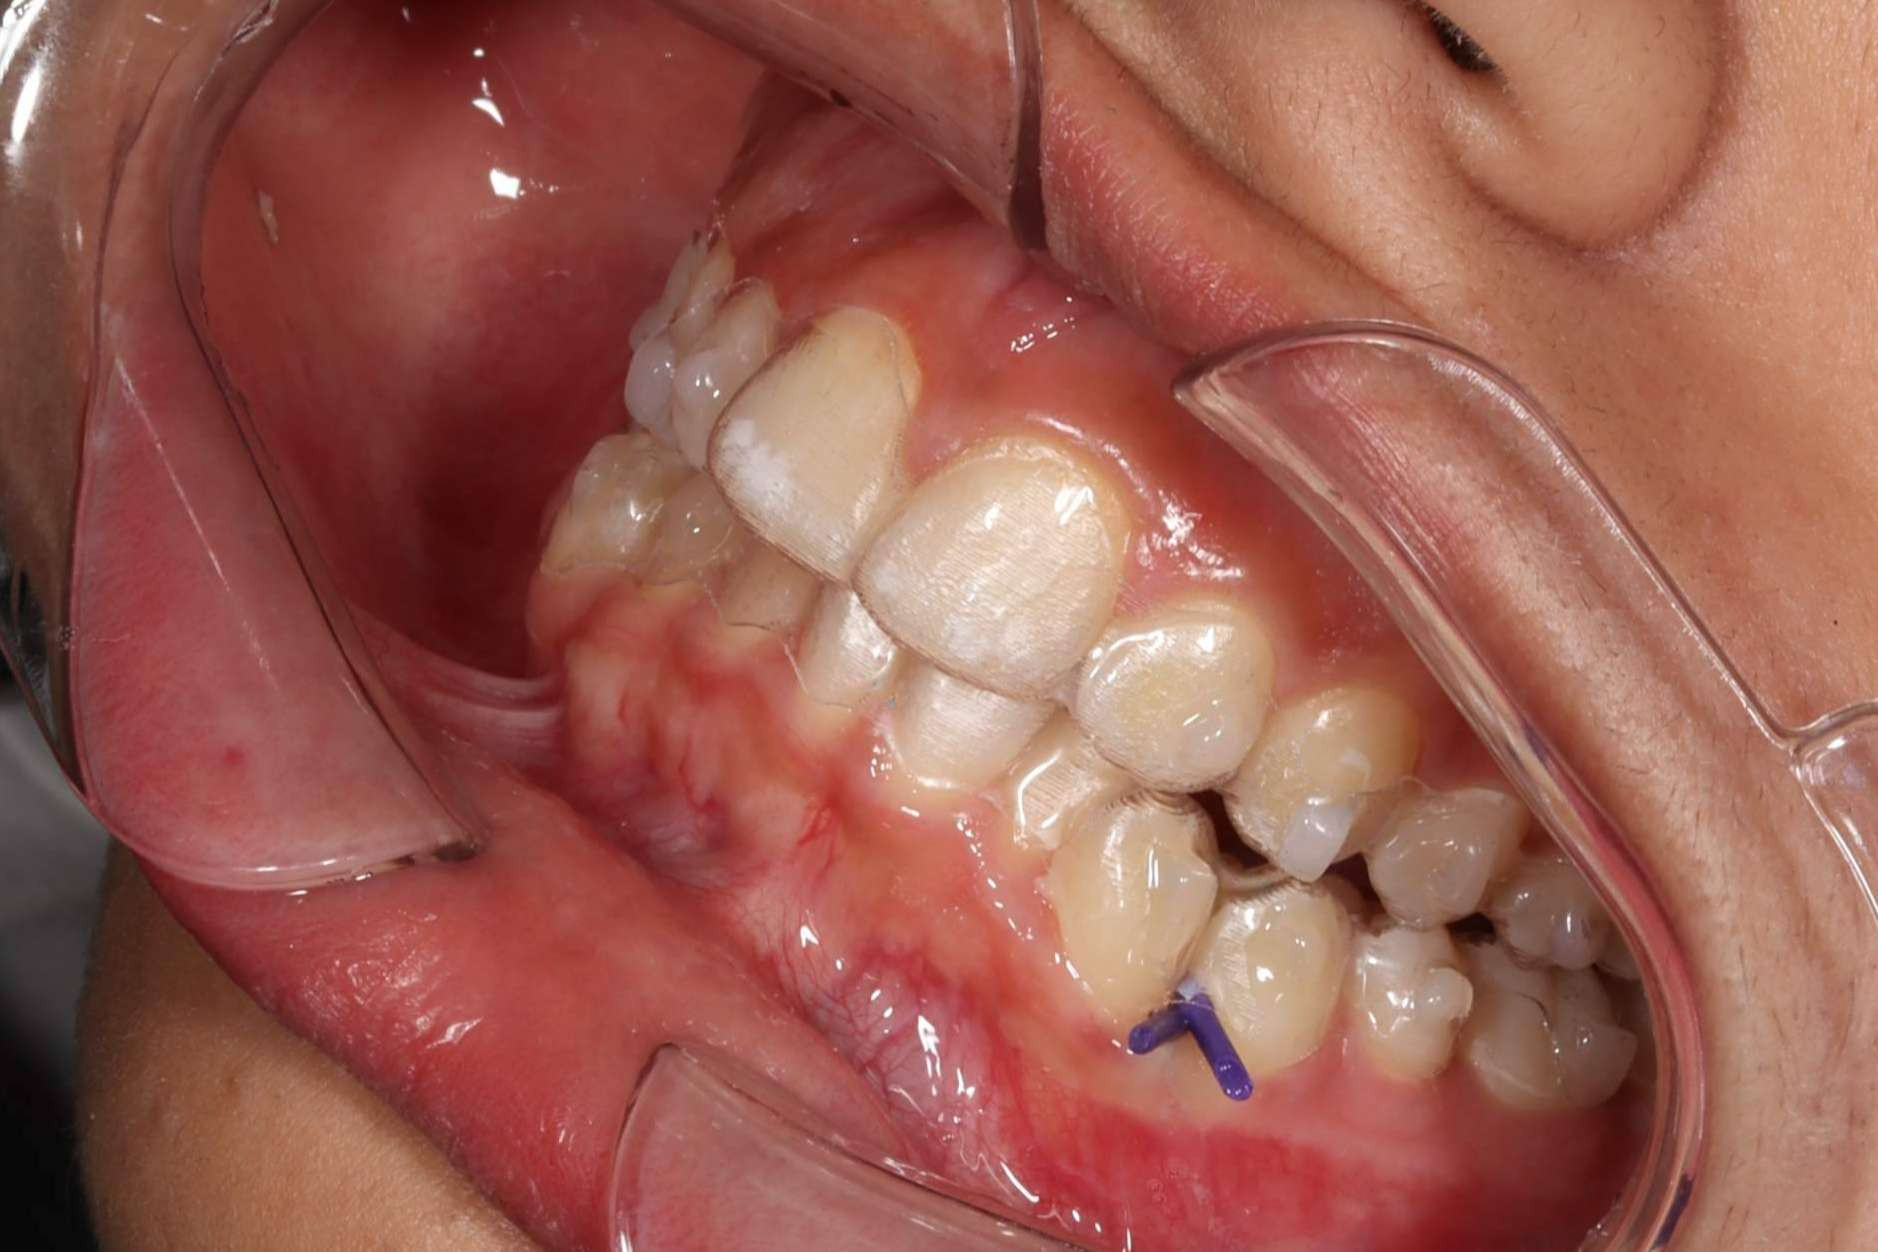  El 56% de las personas tienen miedo a ponerse ortodoncia 